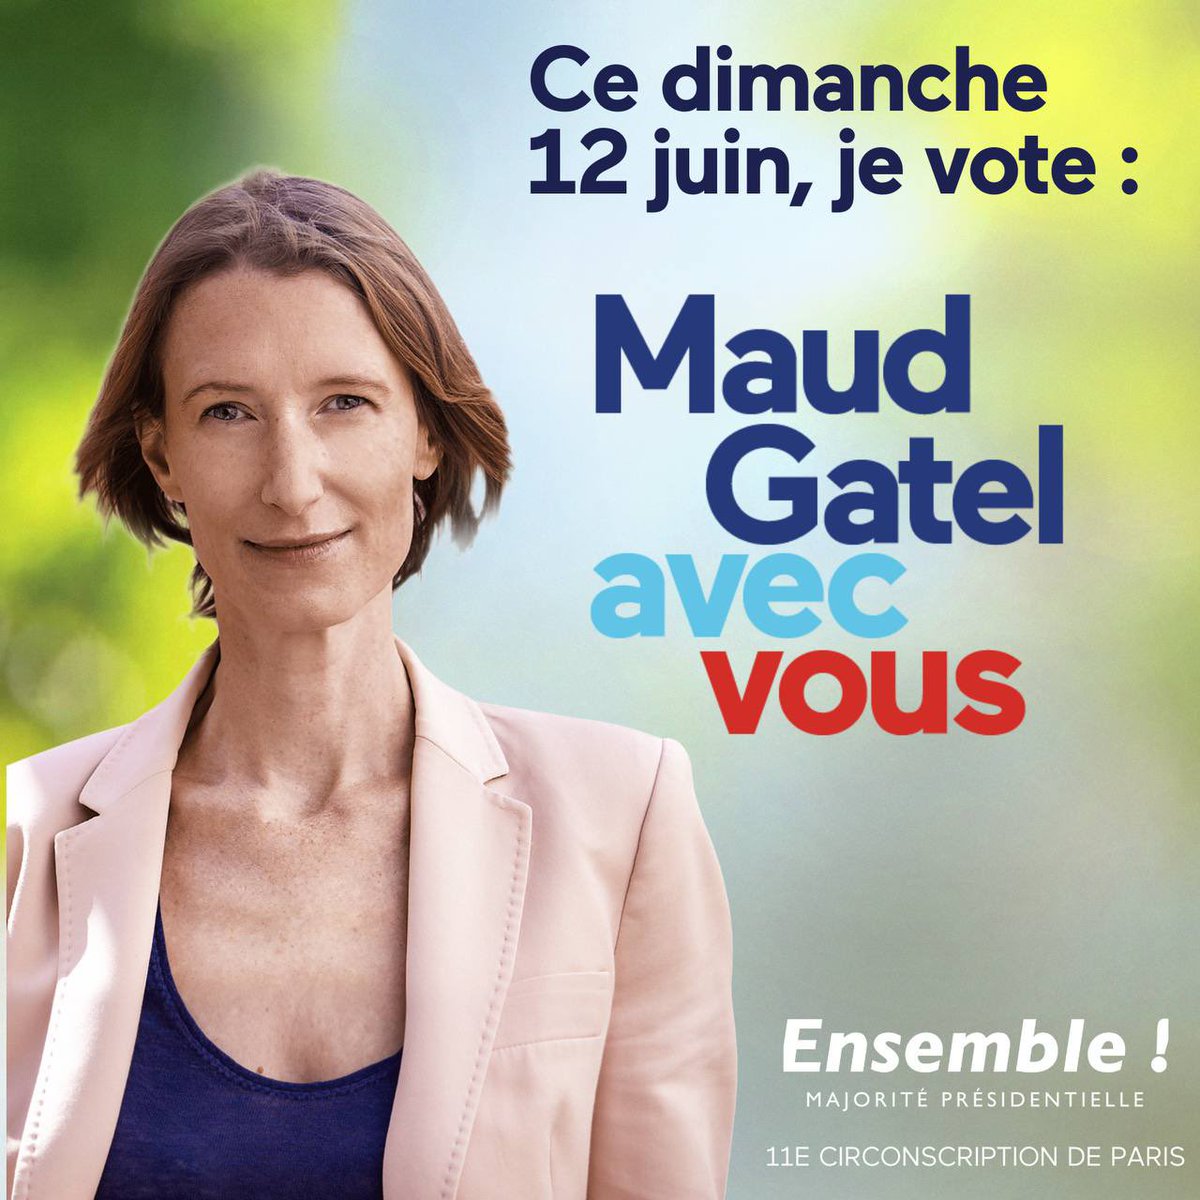 Ce dimanche, ne laissez pas les autres choisir pour vous.

Votez pour le seul projet capable de faire face aux défis qui se dressent devant nous.

Votez pour une France démocratique et écologique dans une Europe forte.

Votez #Ensemble dans la #circo7511, et dans toute la France.